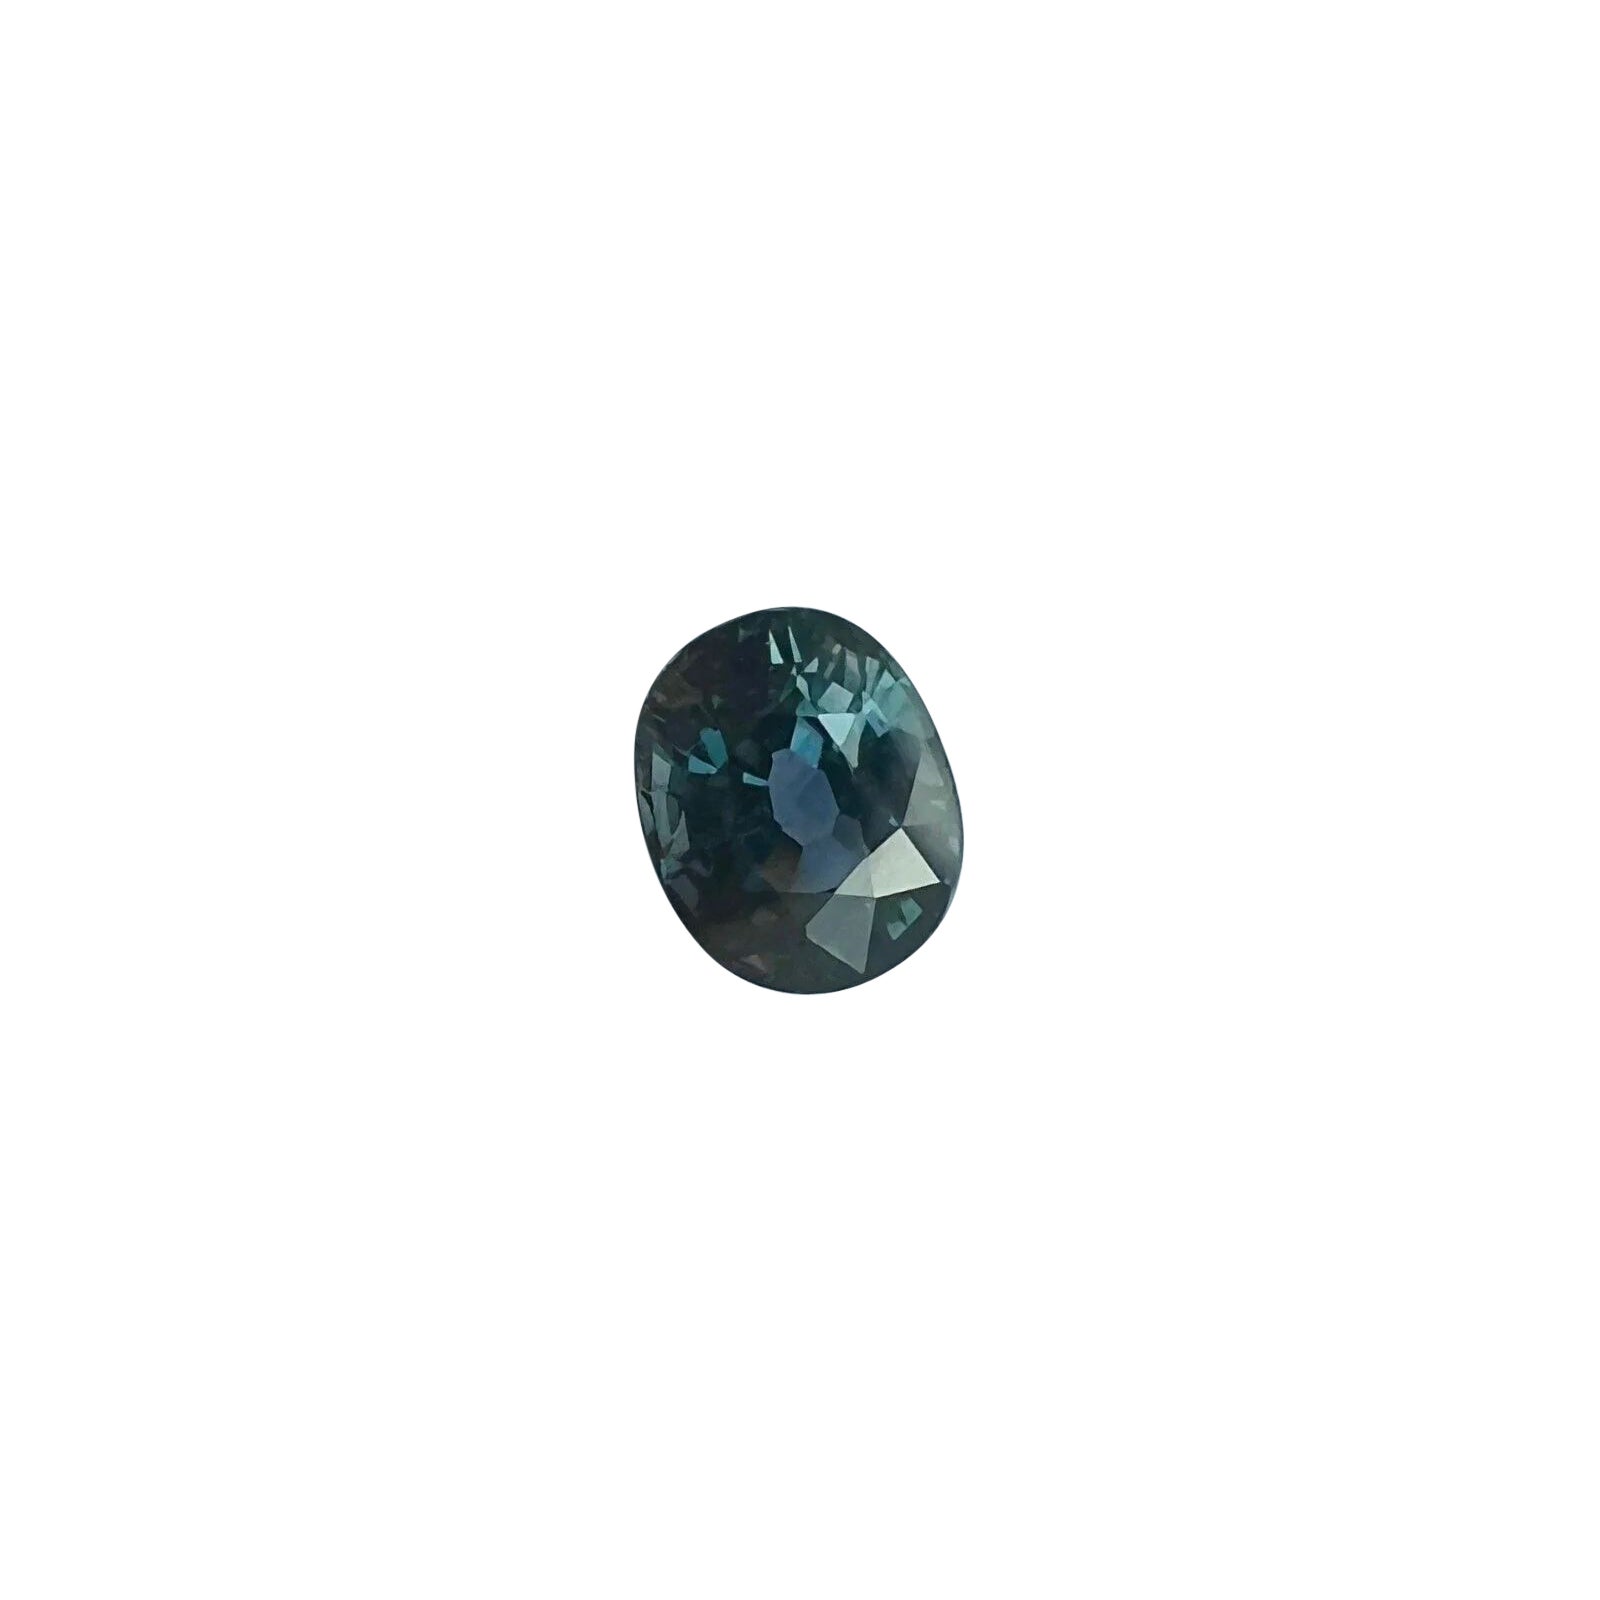 Saphir taille ovale non chauffé vert bleu violet certifié IGI de 1,08 carat à couleur changeante en vente